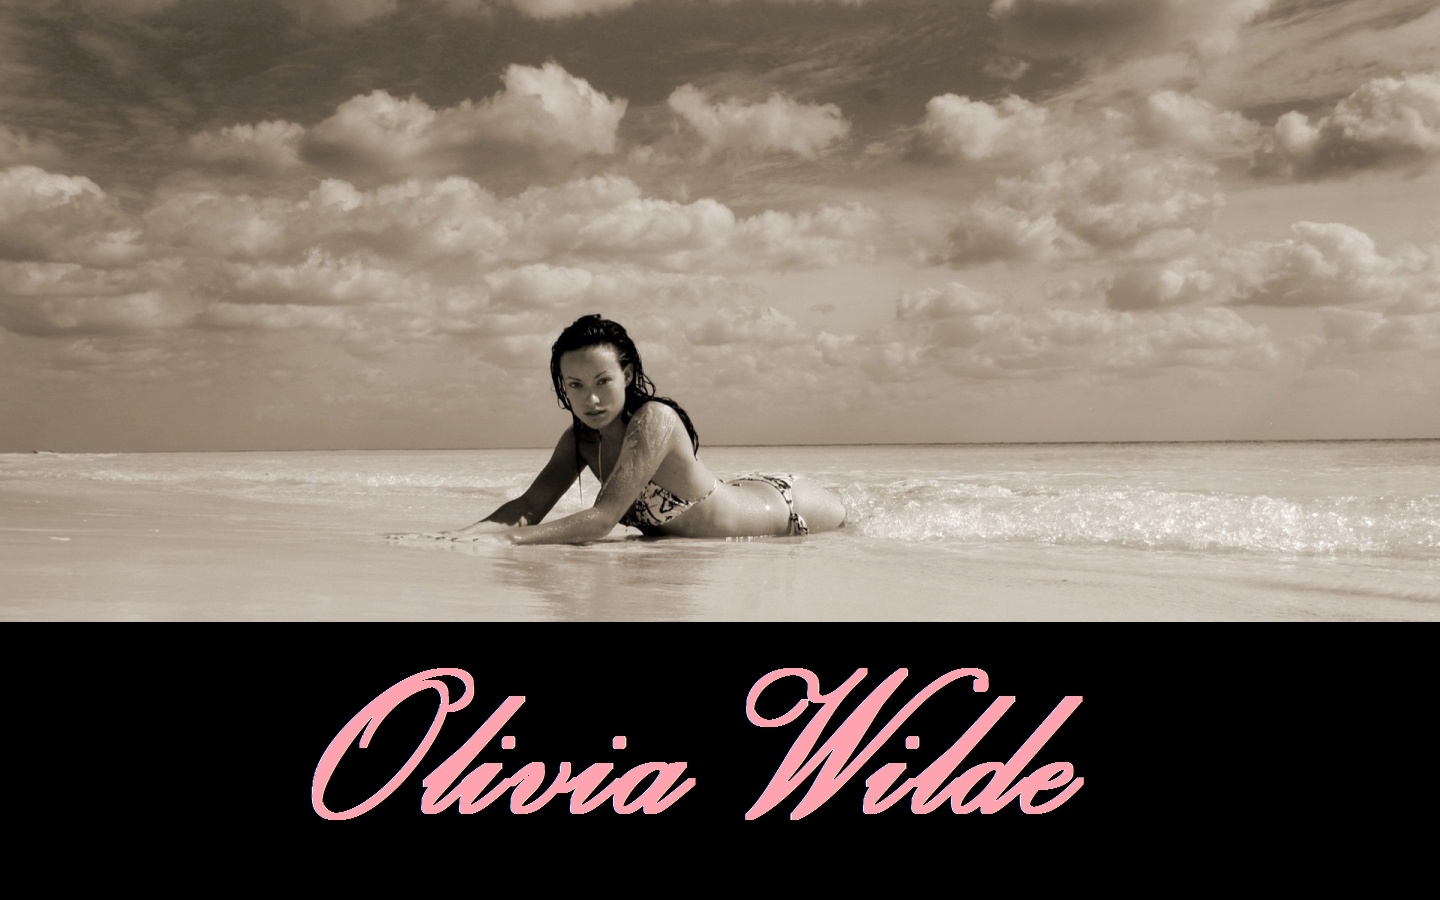 [Olivia-Wilde-olivia-wilde-4098161-1440-900.jpg]